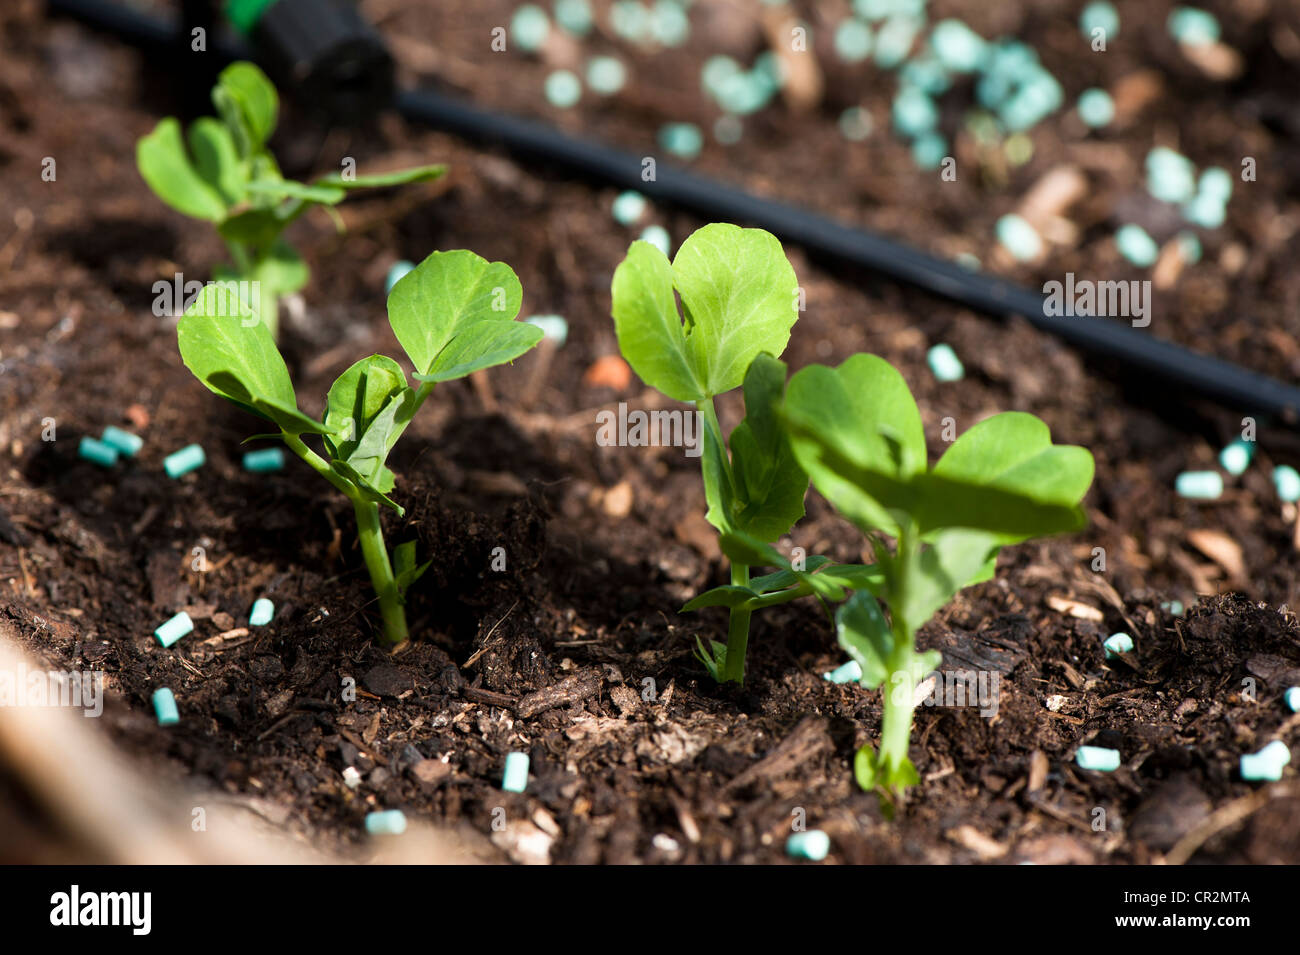 Young pea plants, Pisum sativum 'Misty' with slug and snail pellets Stock Photo